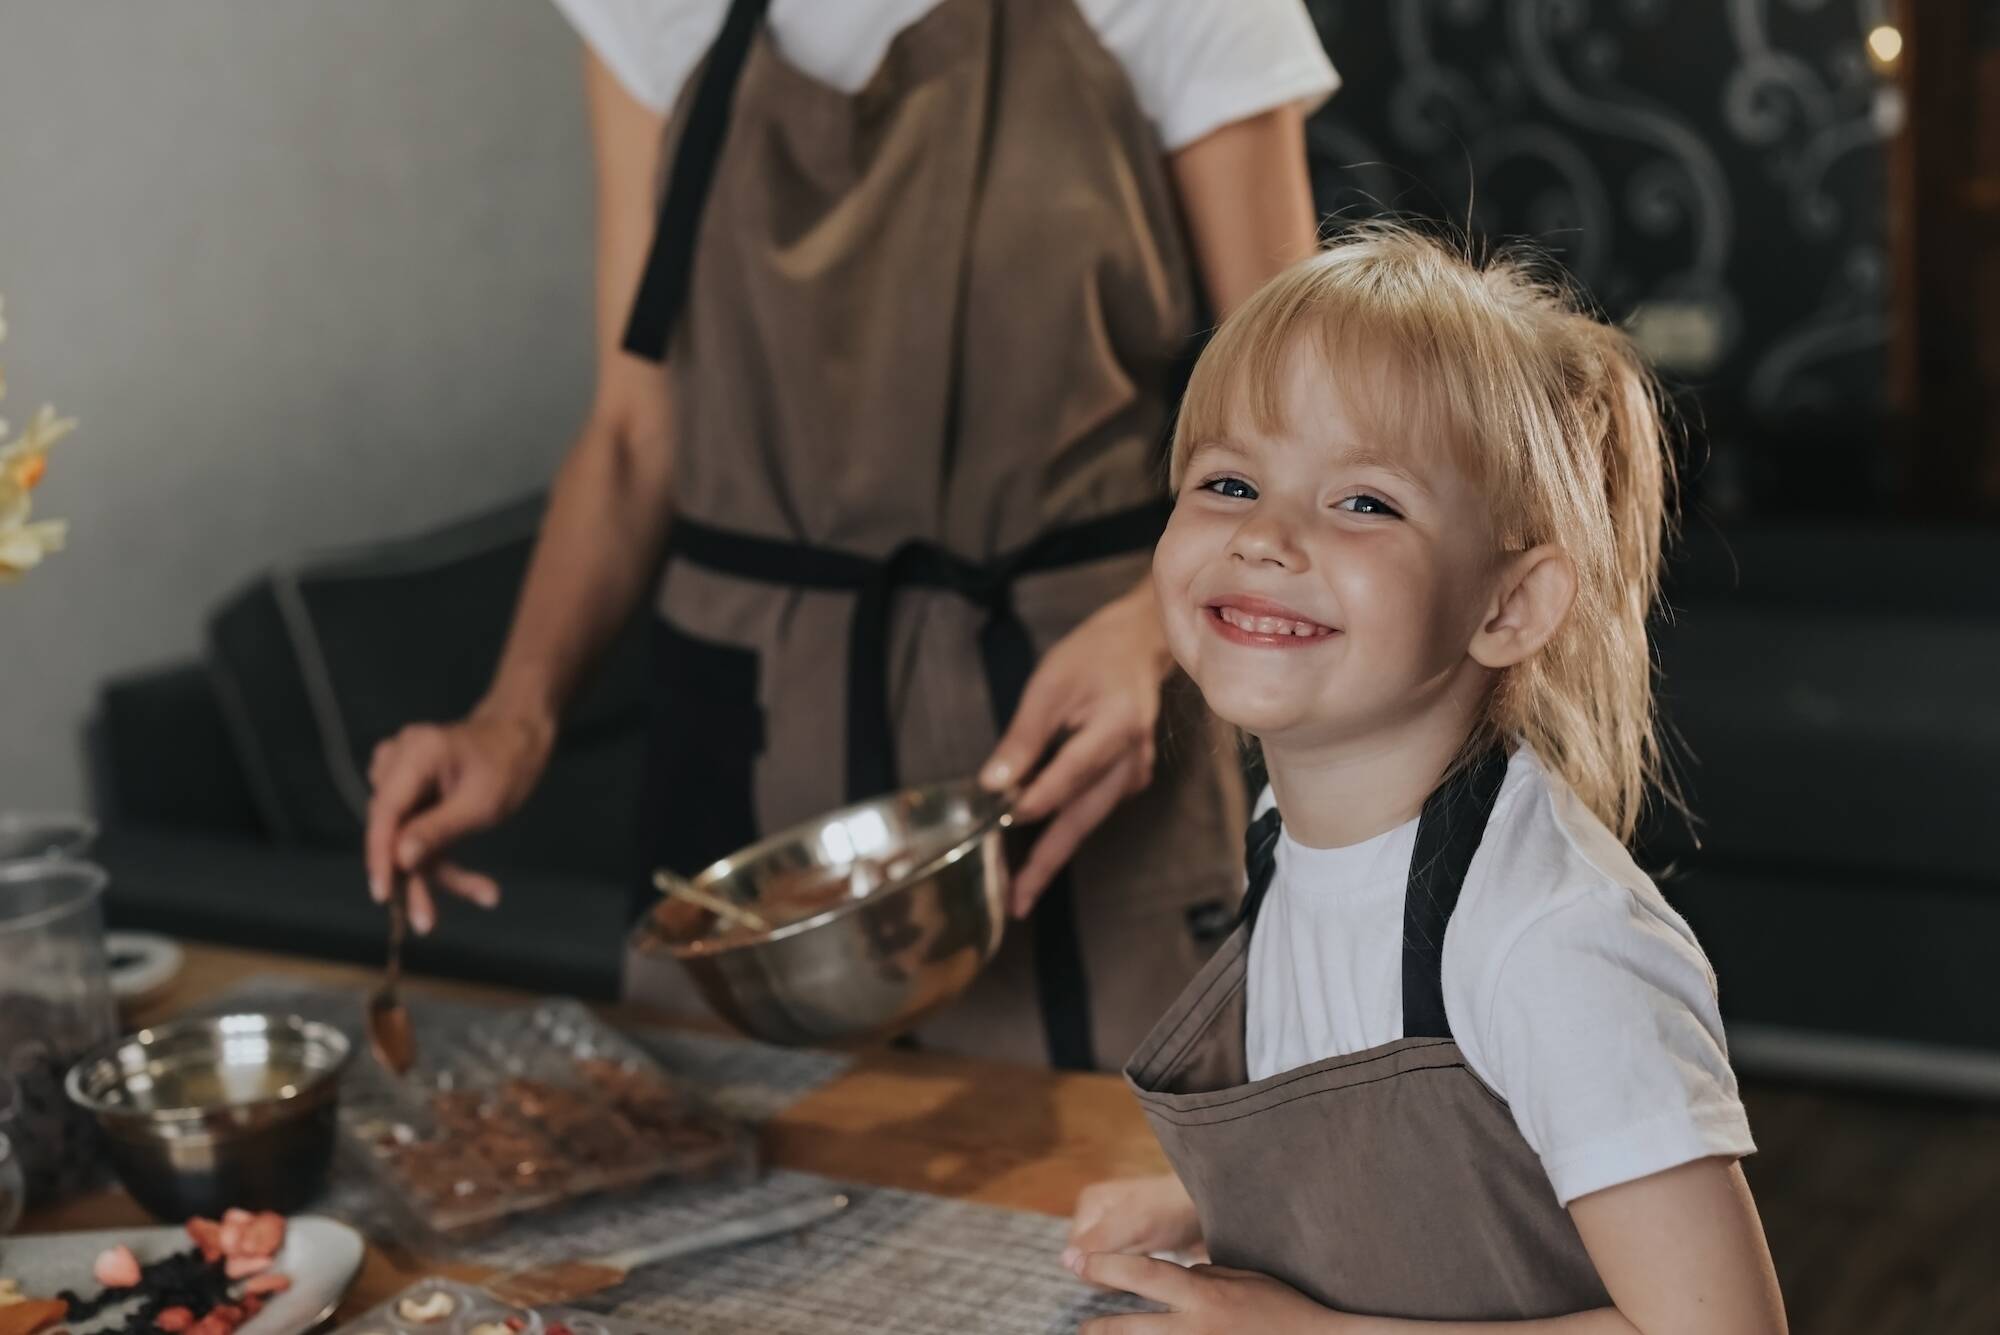 Шоколадных дел мастера: в библиотеке Даниловского открылись кулинарные курсы для детей, фото